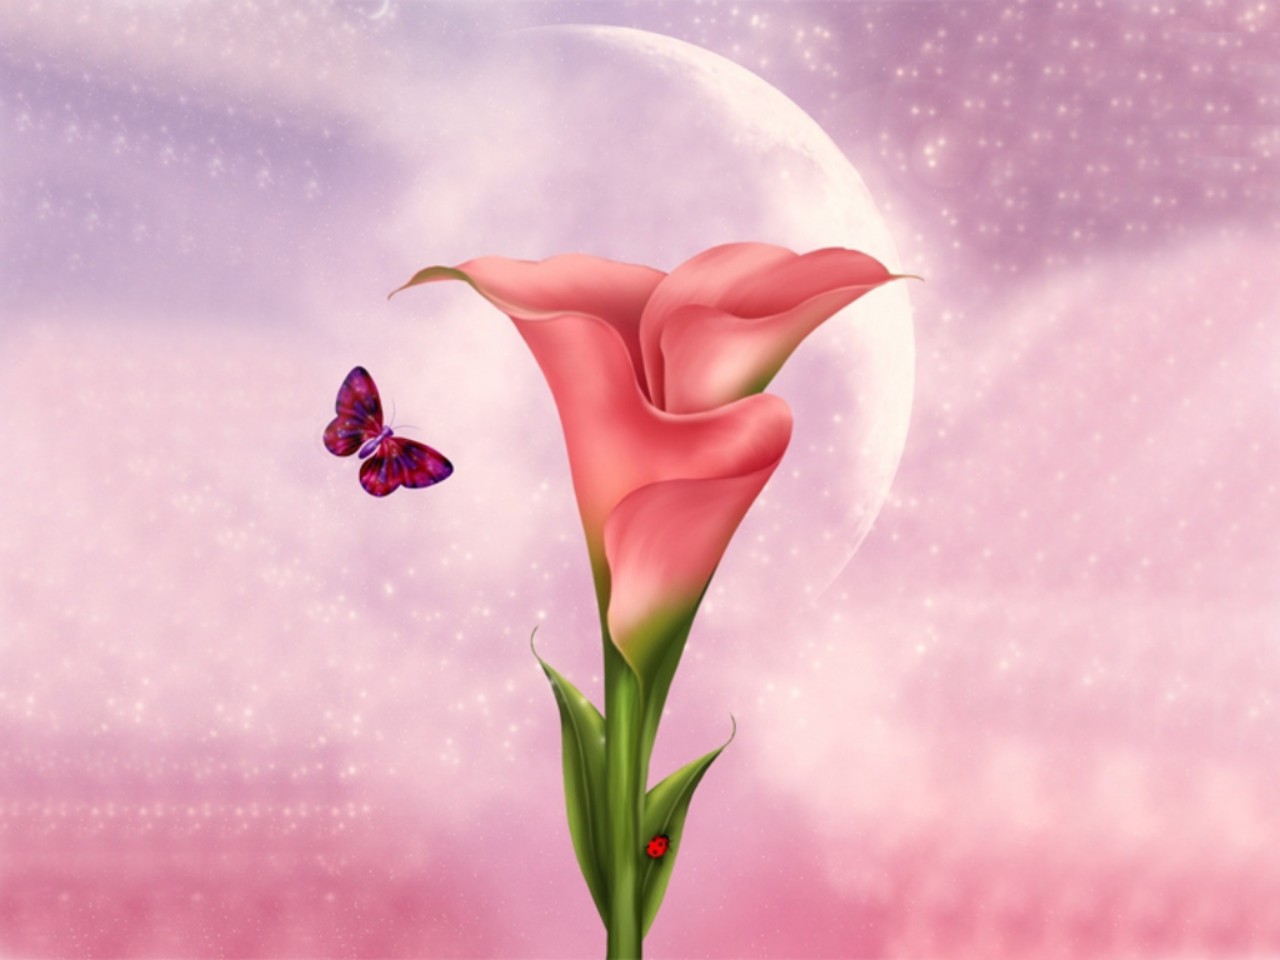 Скачать обои бесплатно Цветок, Бабочка, Розовый, Художественные картинка на рабочий стол ПК